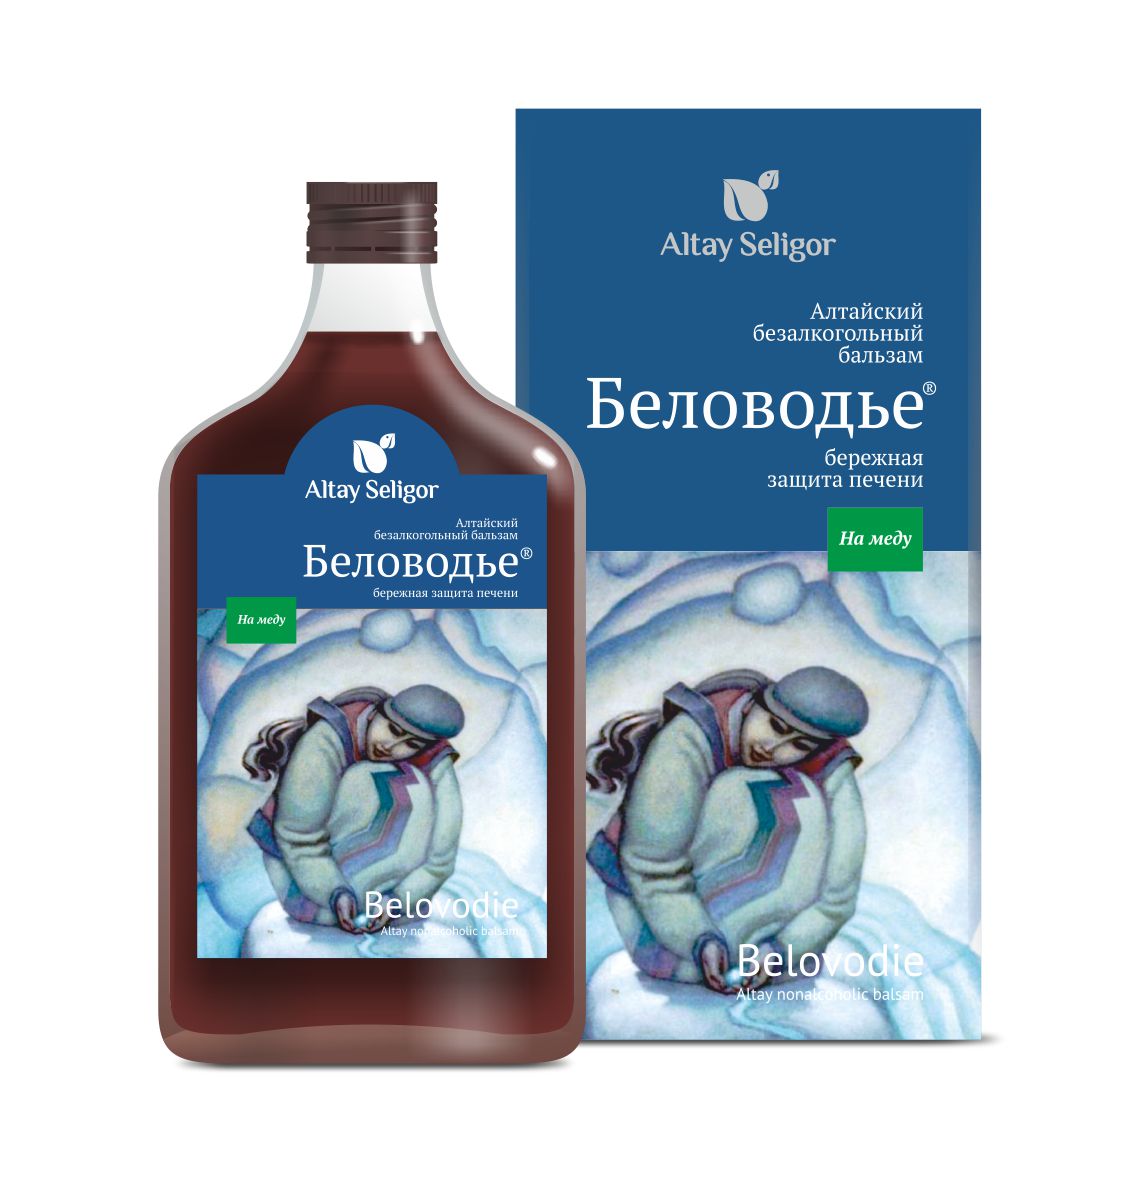 Алтайский бальзам на меду "Беловодье"